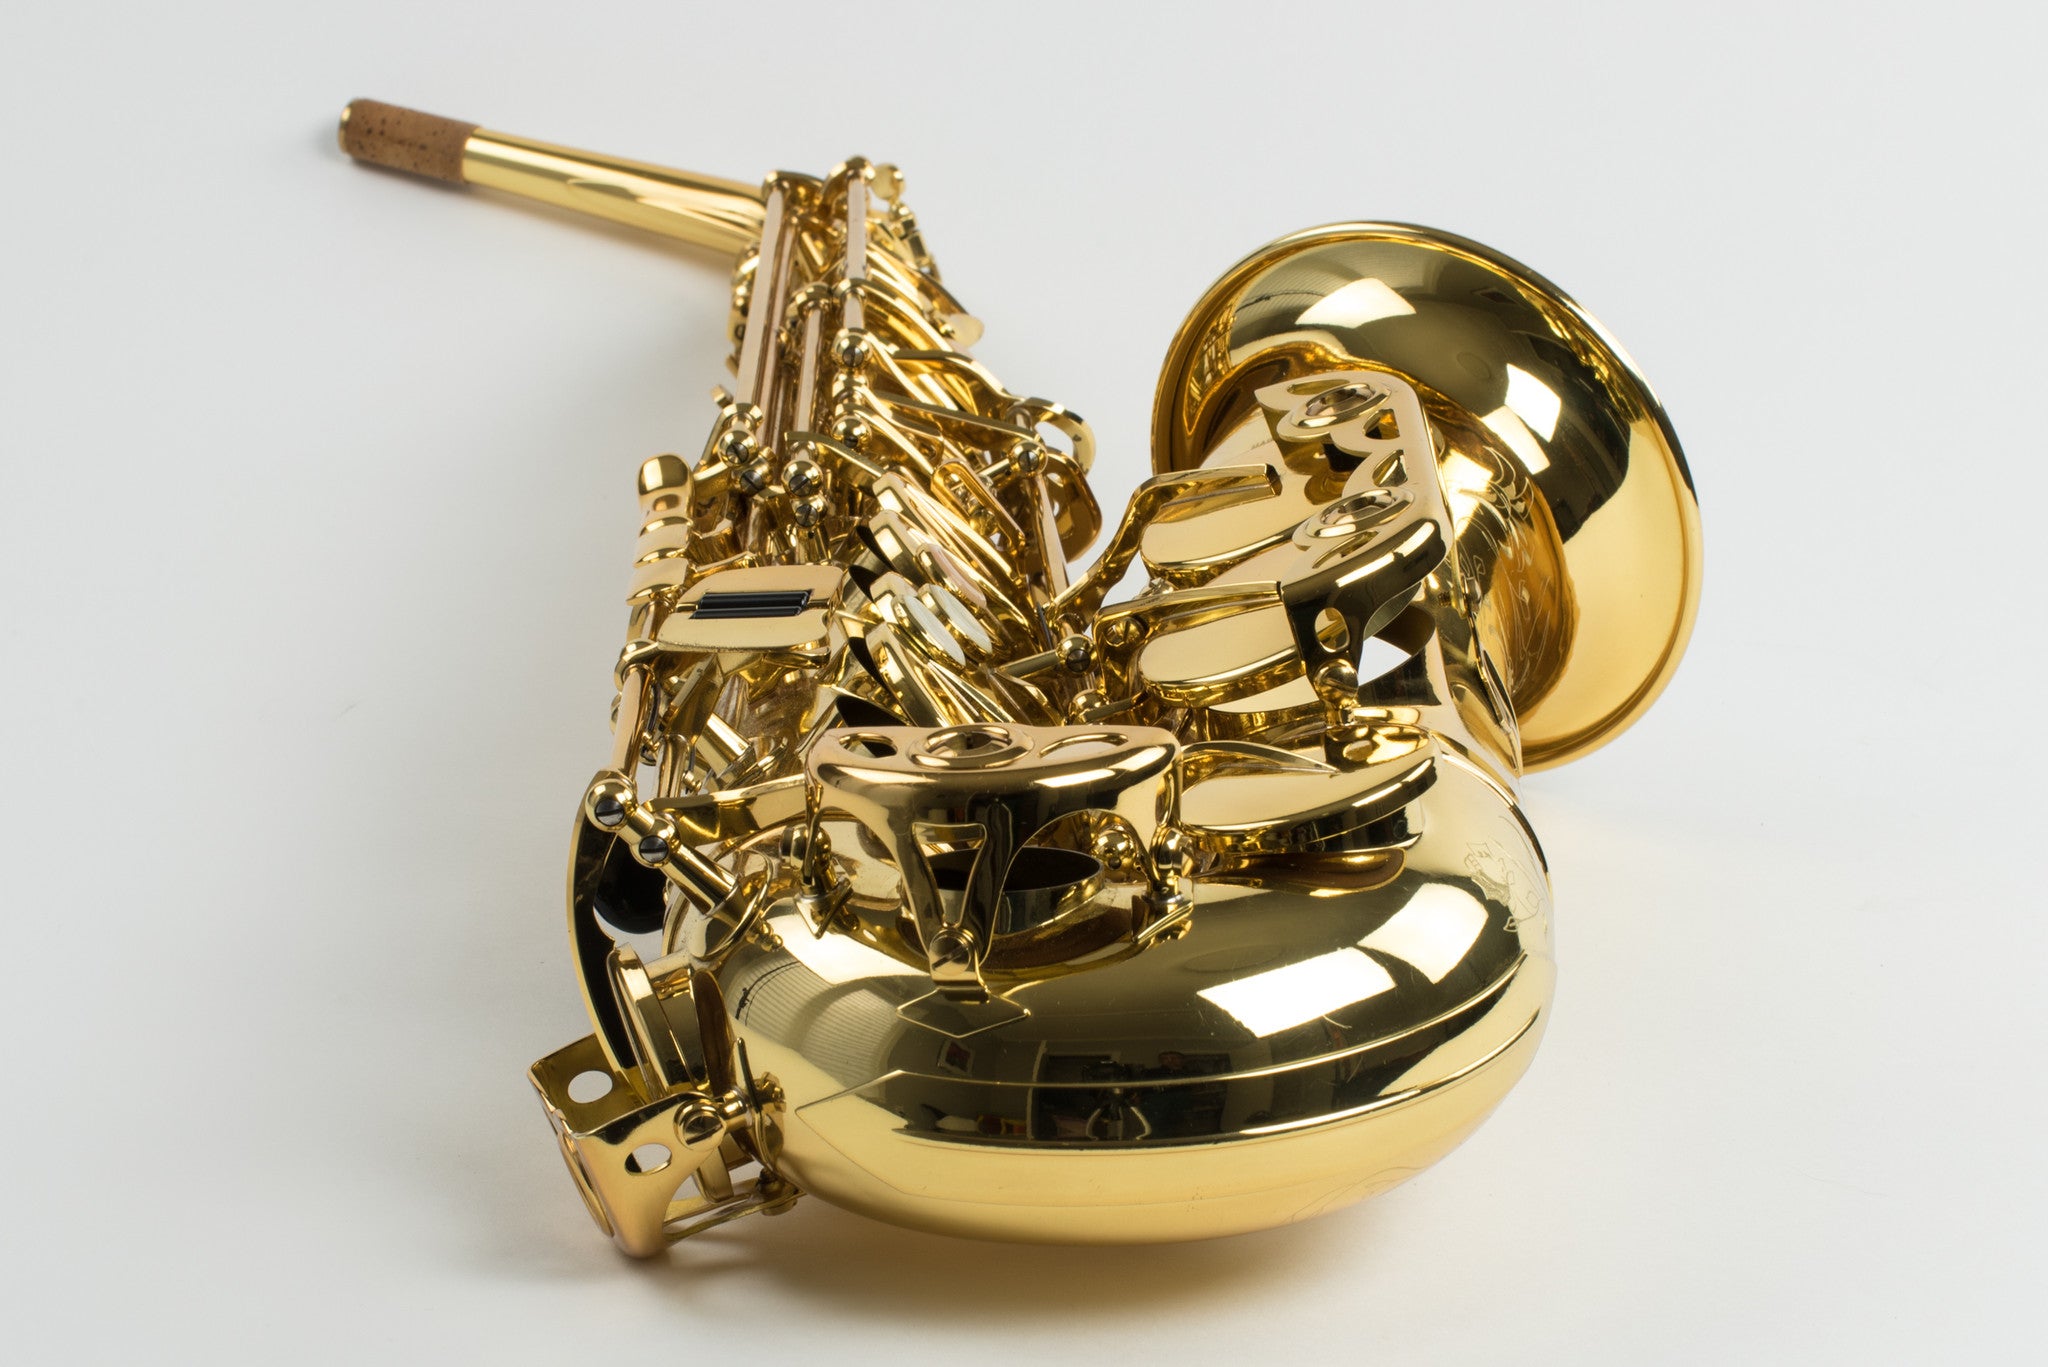 Selmer Jubilee Series II Alto Saxophone Near Mint Condition